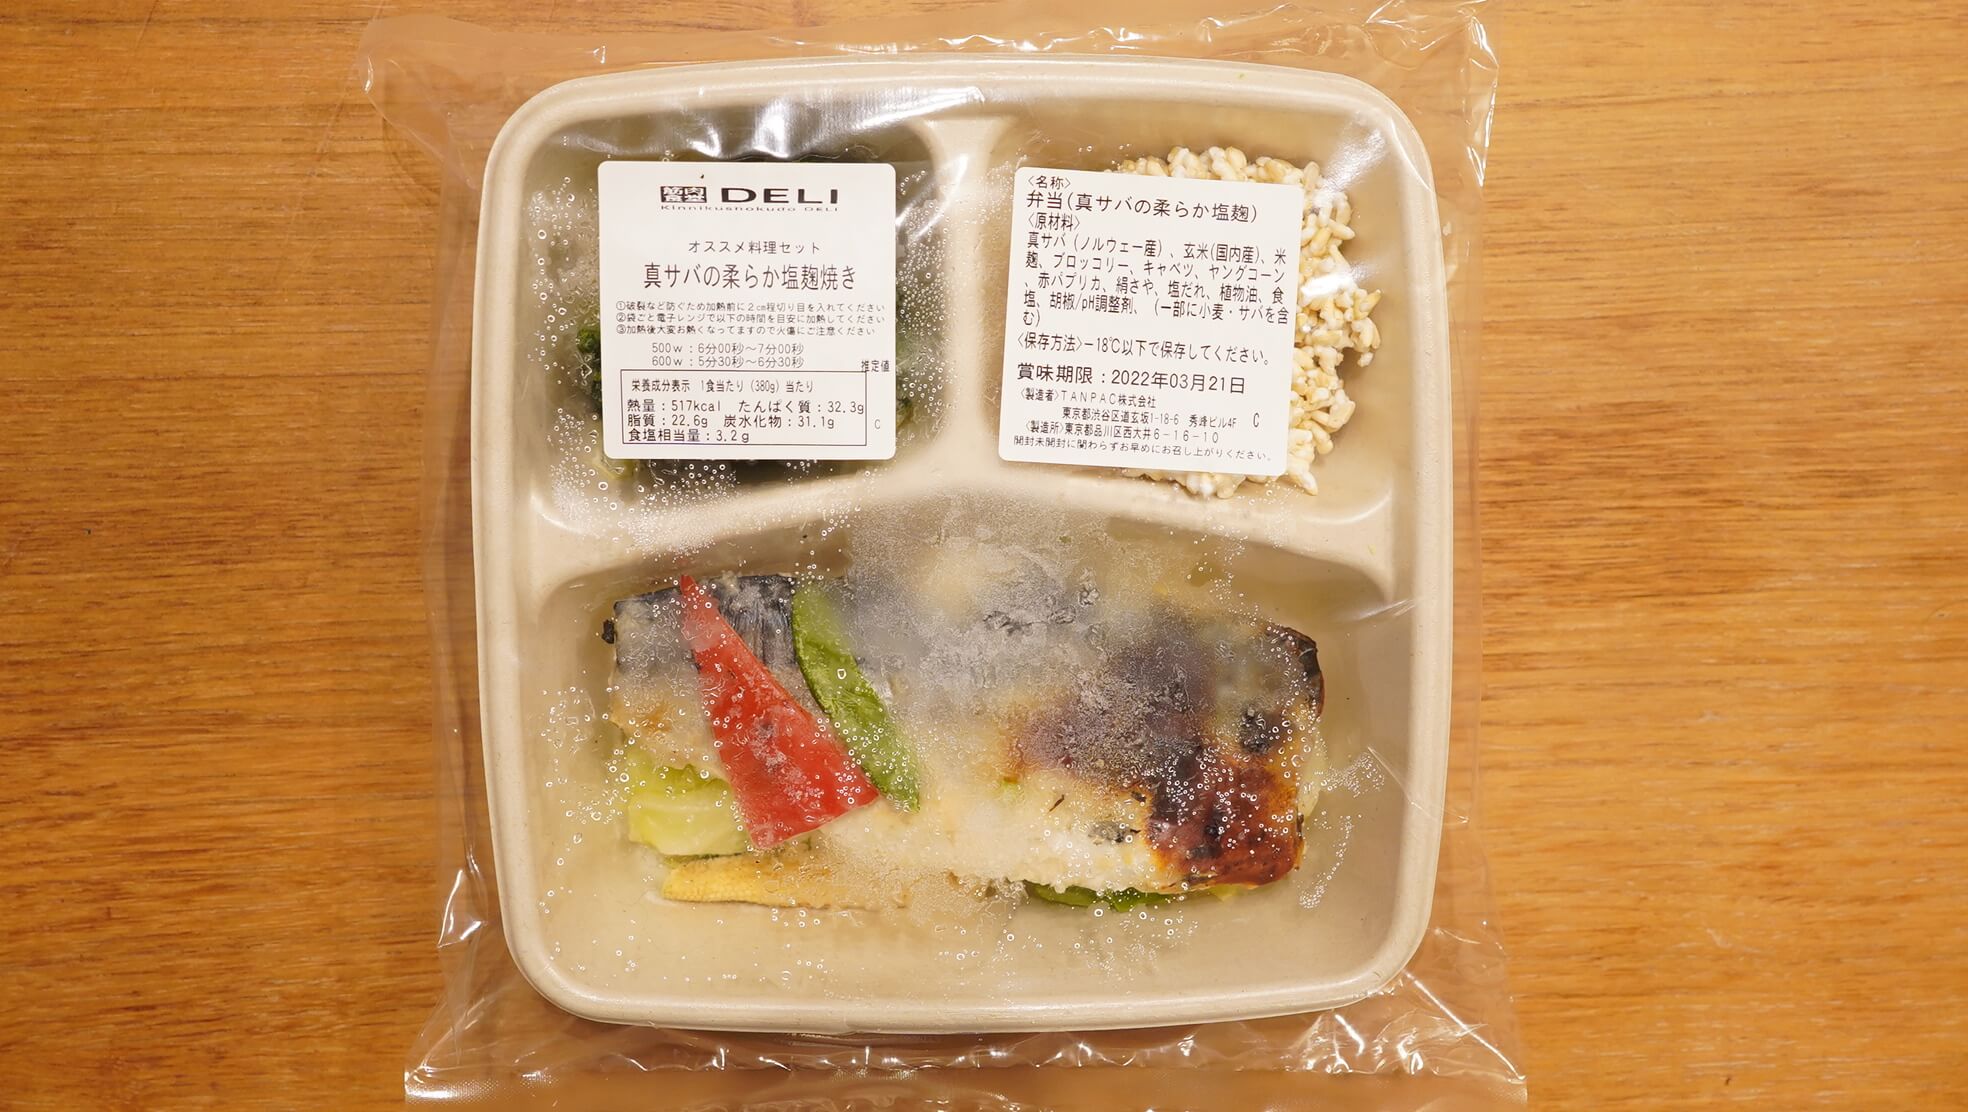 筋肉食堂DELIの冷凍宅配弁当「真サバの柔らか塩麹焼き」のパッケージ写真